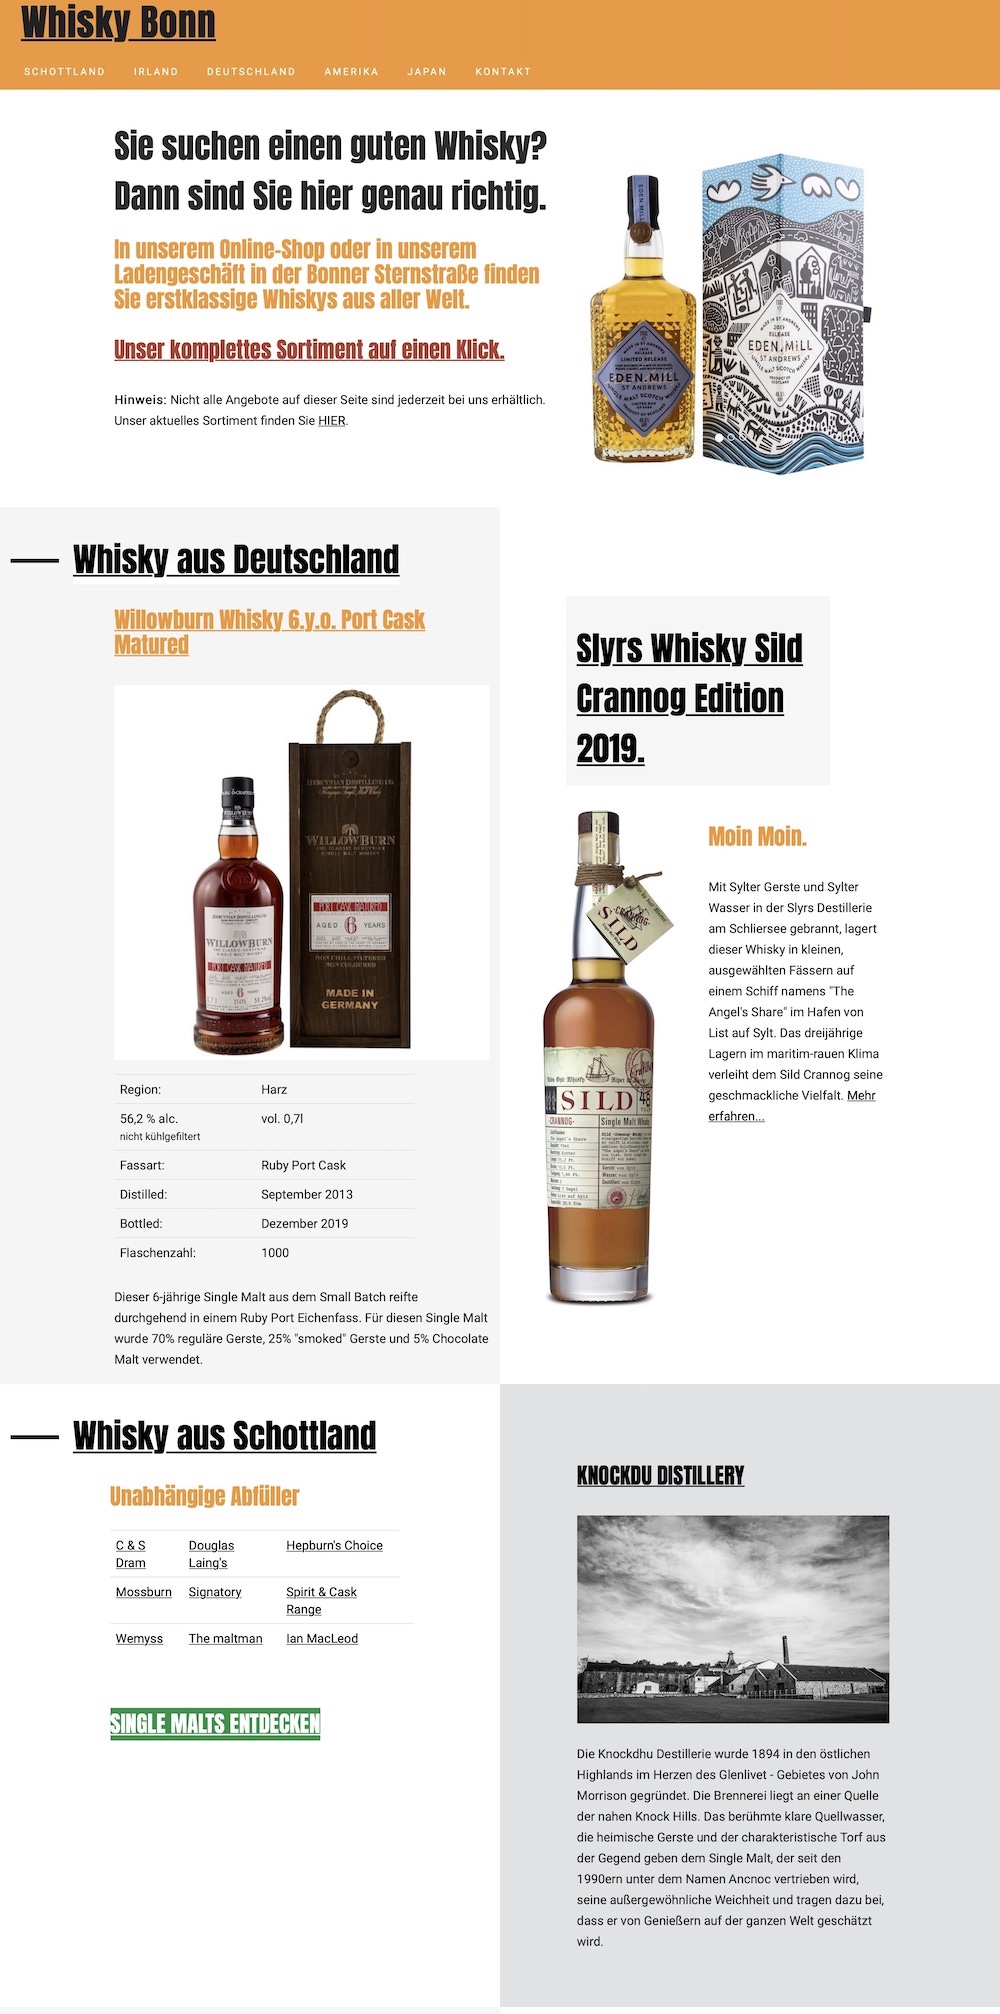 WhiskyCloud Bonn